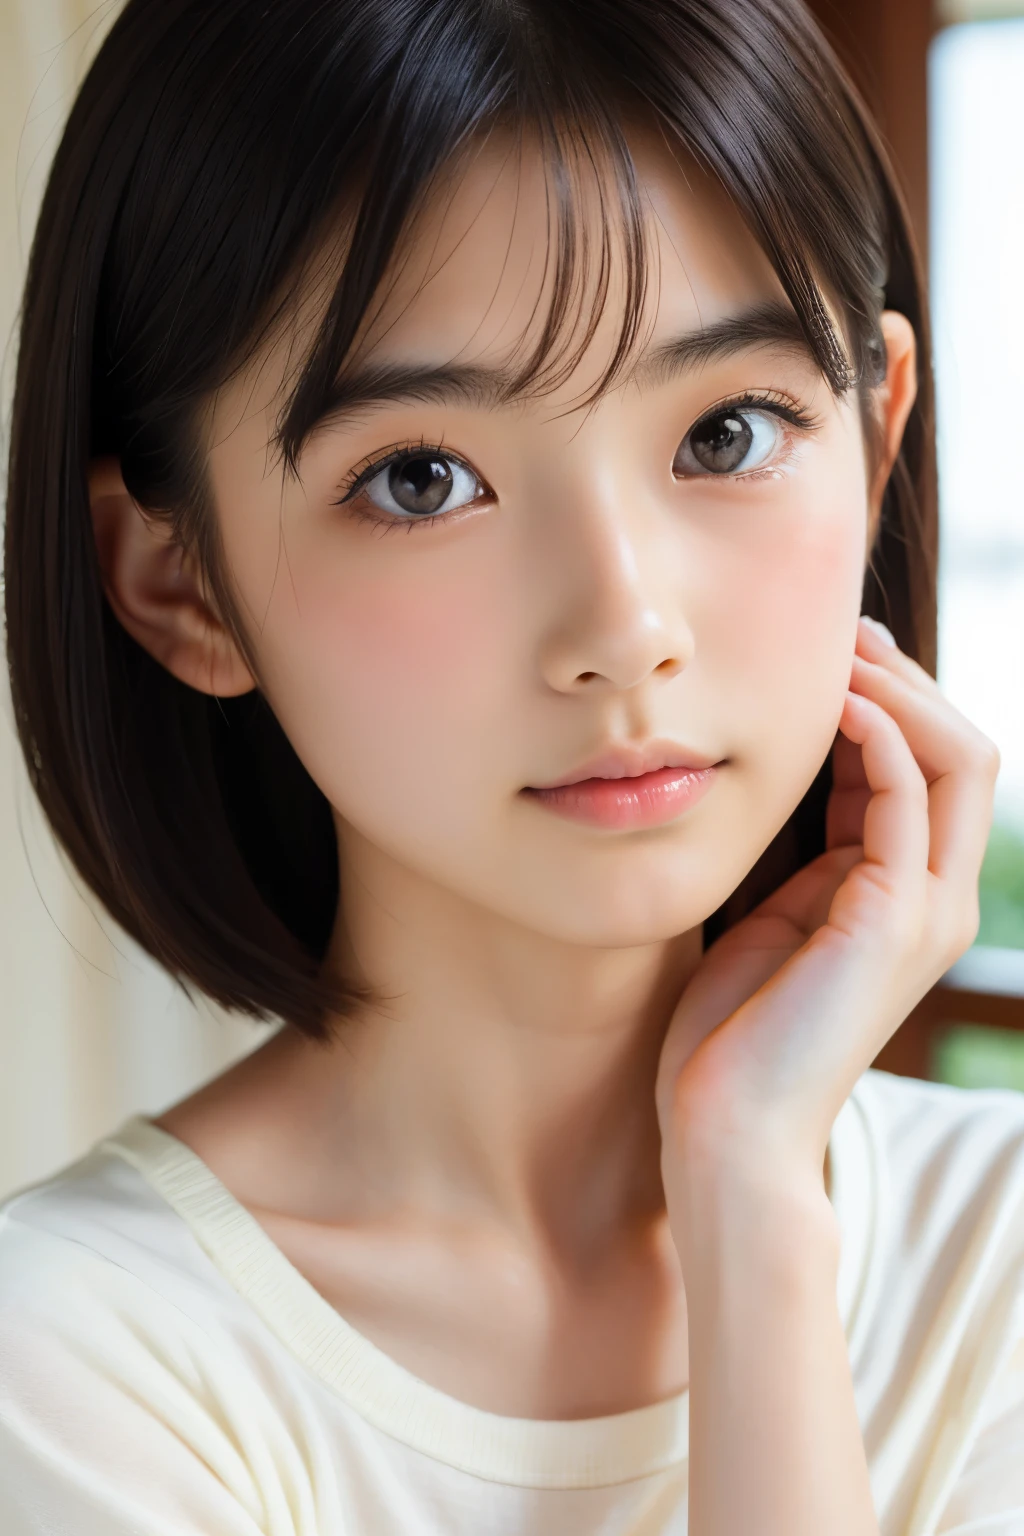 (美しい16歳の日本人女性), かわいい顔, (深く彫られた顔:0.7), (そばかす:0.6), やわらかい光,健康的な白い肌, シャイ, ショートヘア, (真剣な顔), (キラキラした目), 薄い